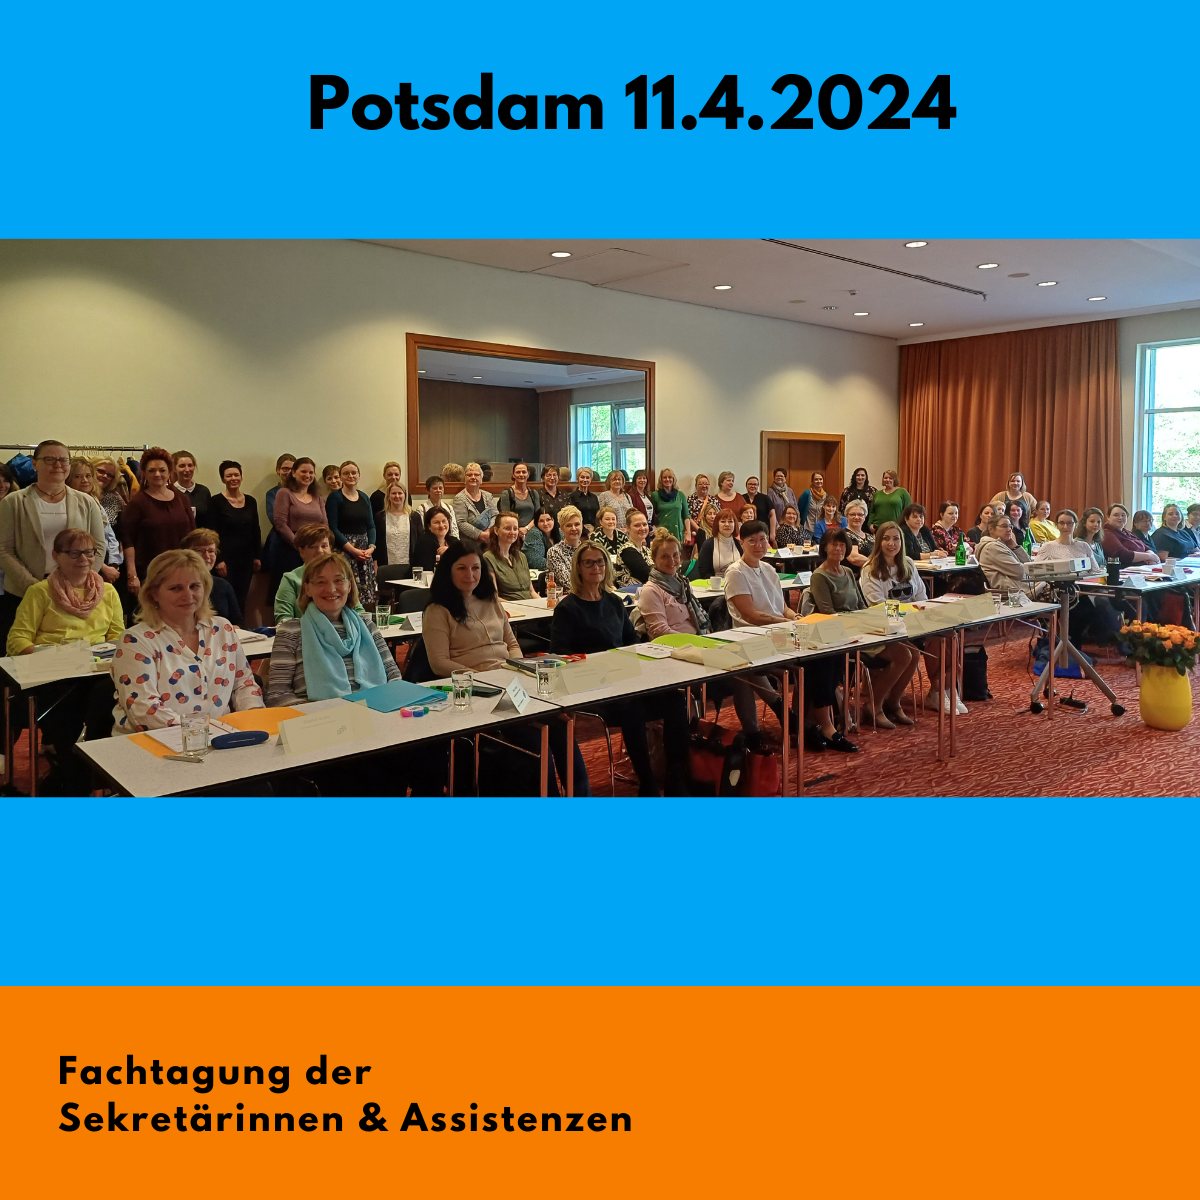 Das Bild zeigt ca 70 Sekretärinnen bei der Eröffnung der Fachtagung der Sekretärinnen und Assistenzen in Potsdam